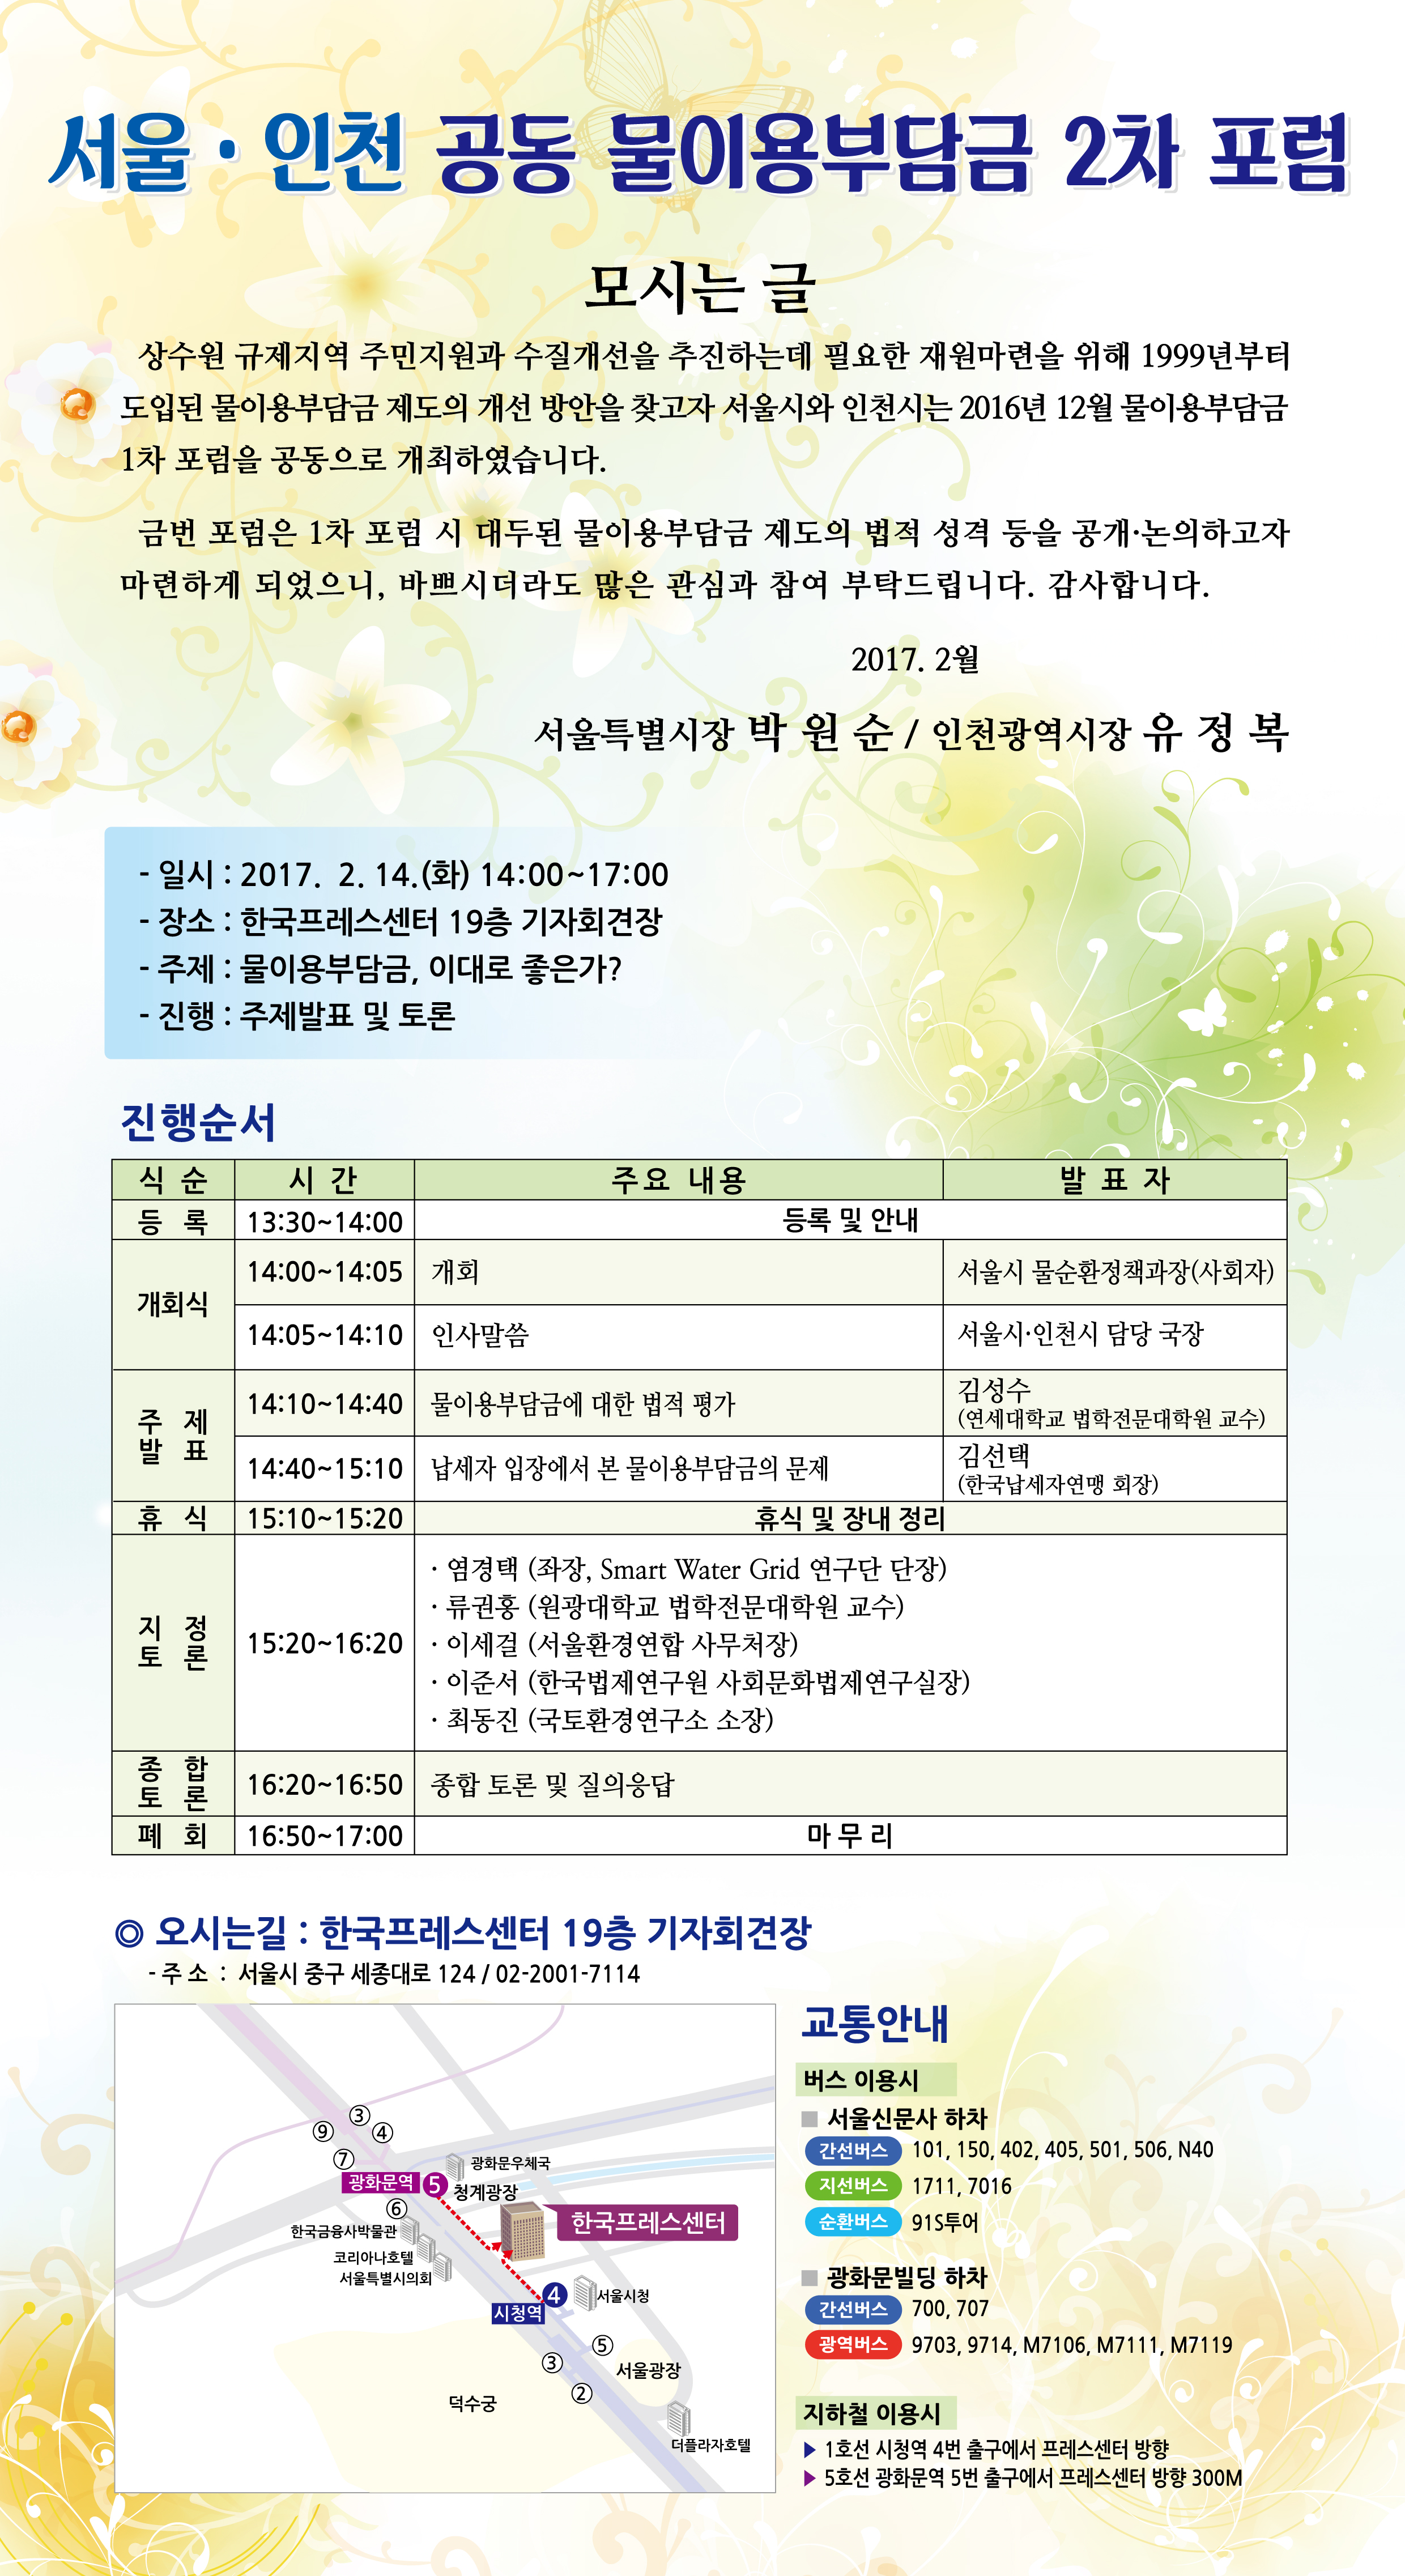 인천·서울 공동 물이용부담금 포럼 개최 안내